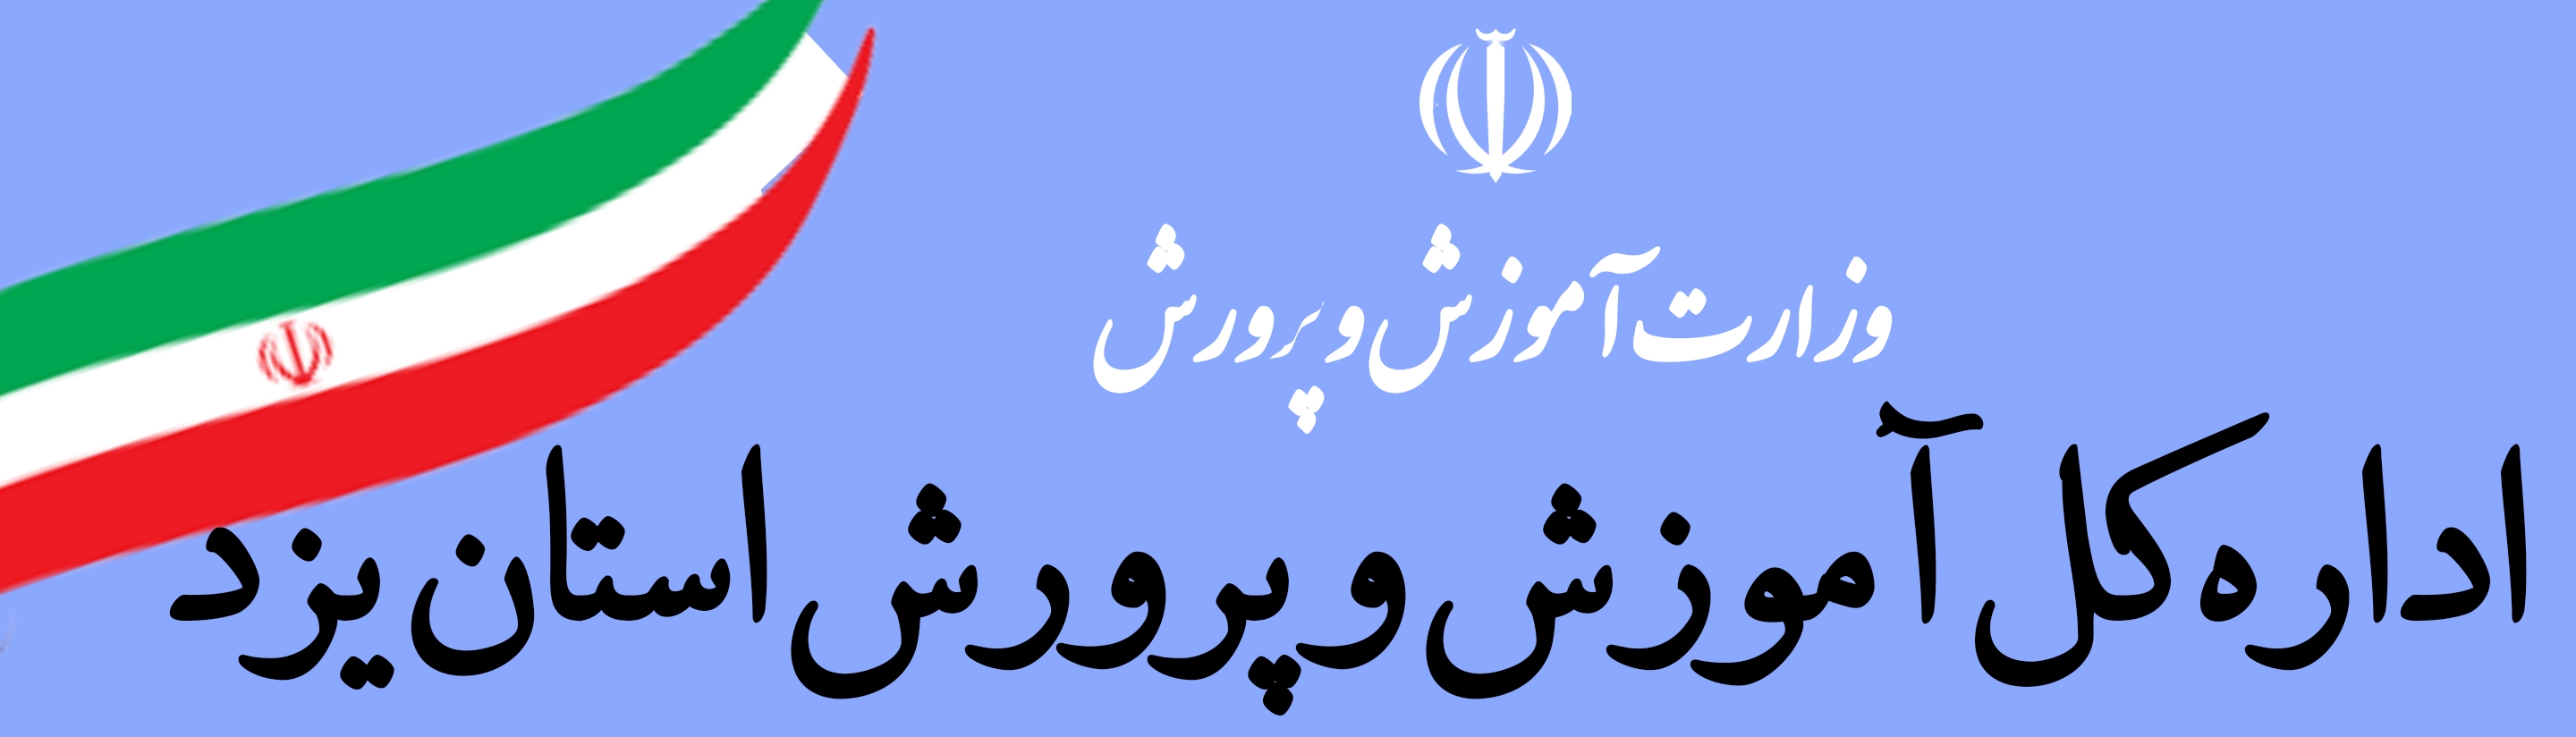 آموزش و پرورش اداره کل استان یزد